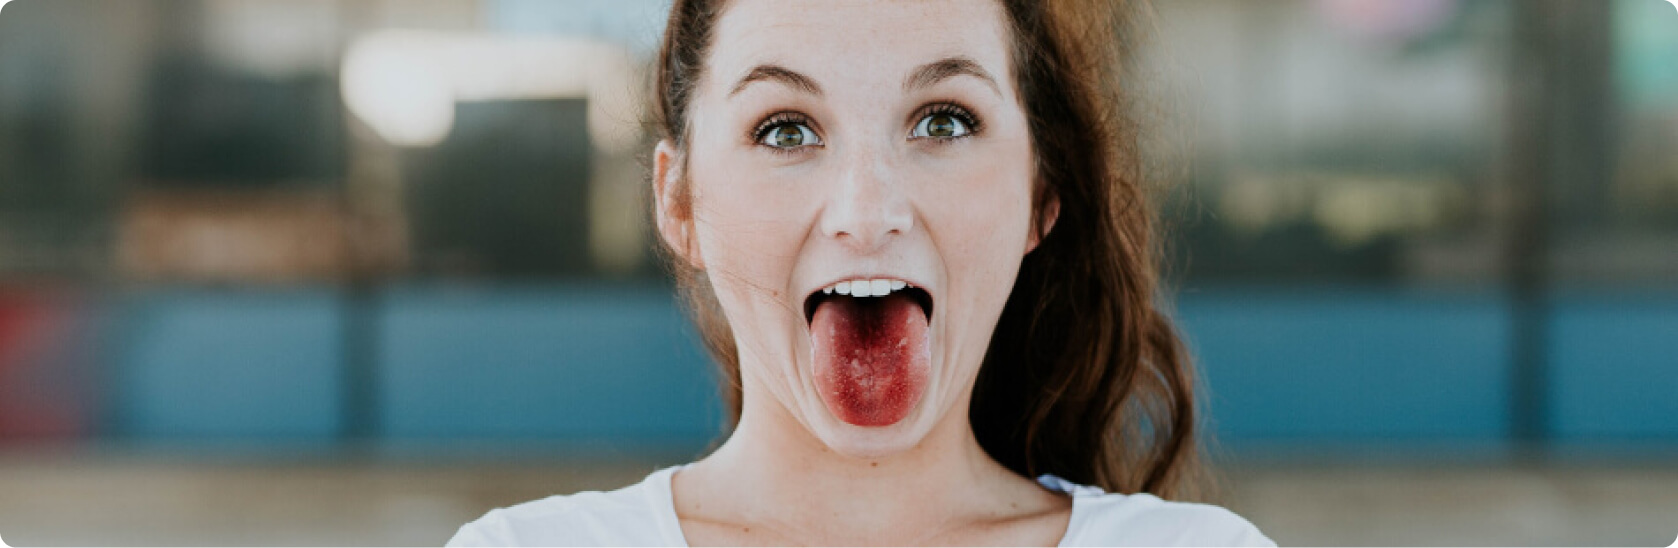 Zungenbelag grauer Zungenbeläge: Welche